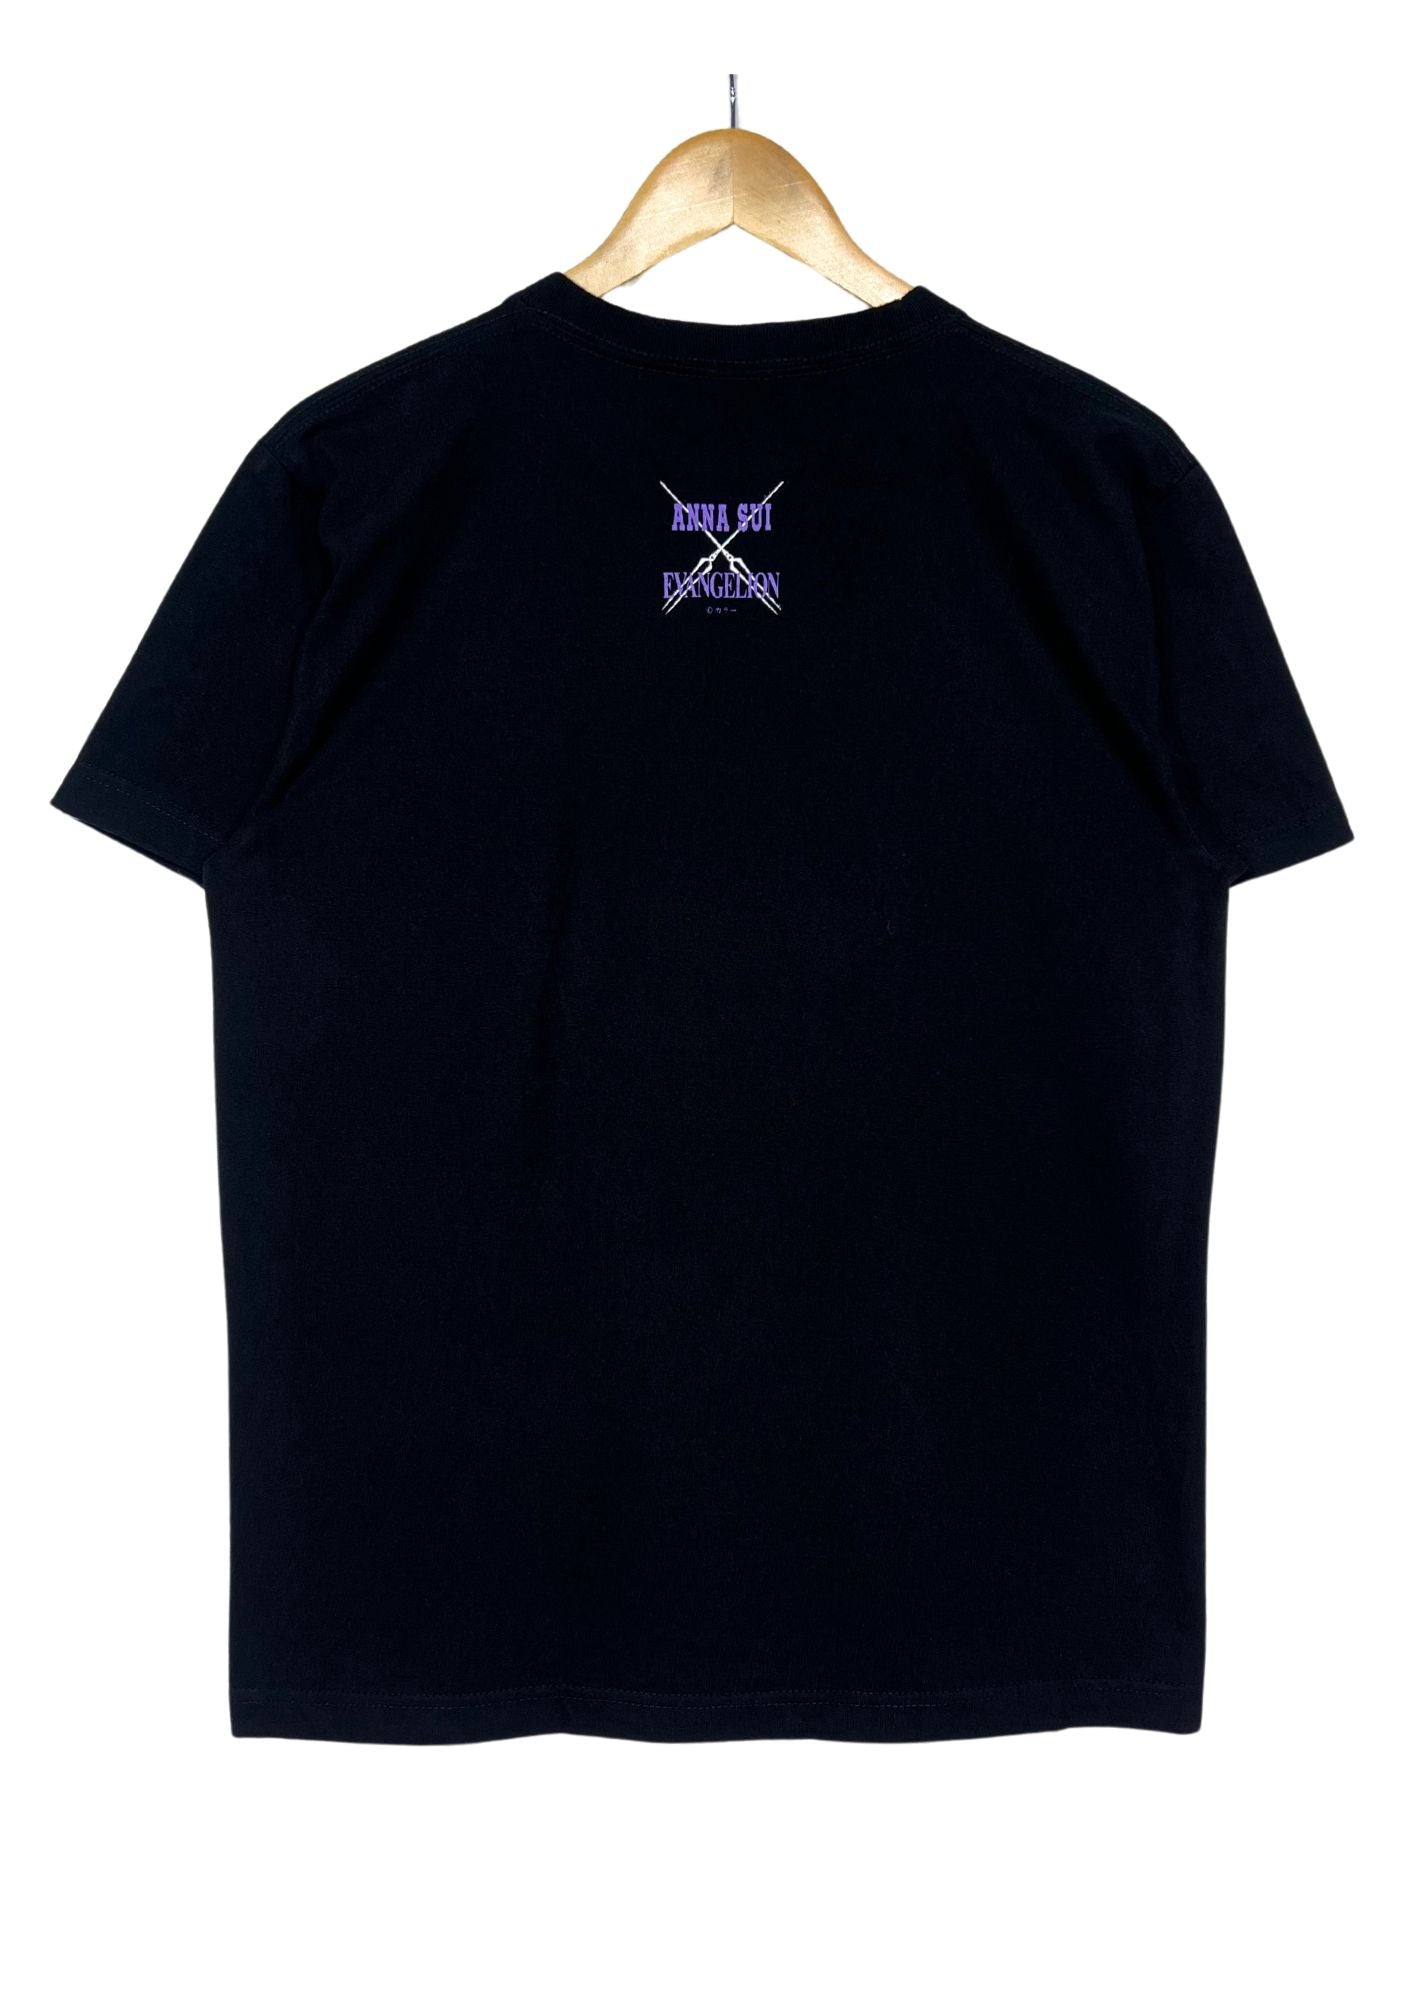 2021 Neon Genesis Evangelion x ANNA SUI EVA 02 T-shirt